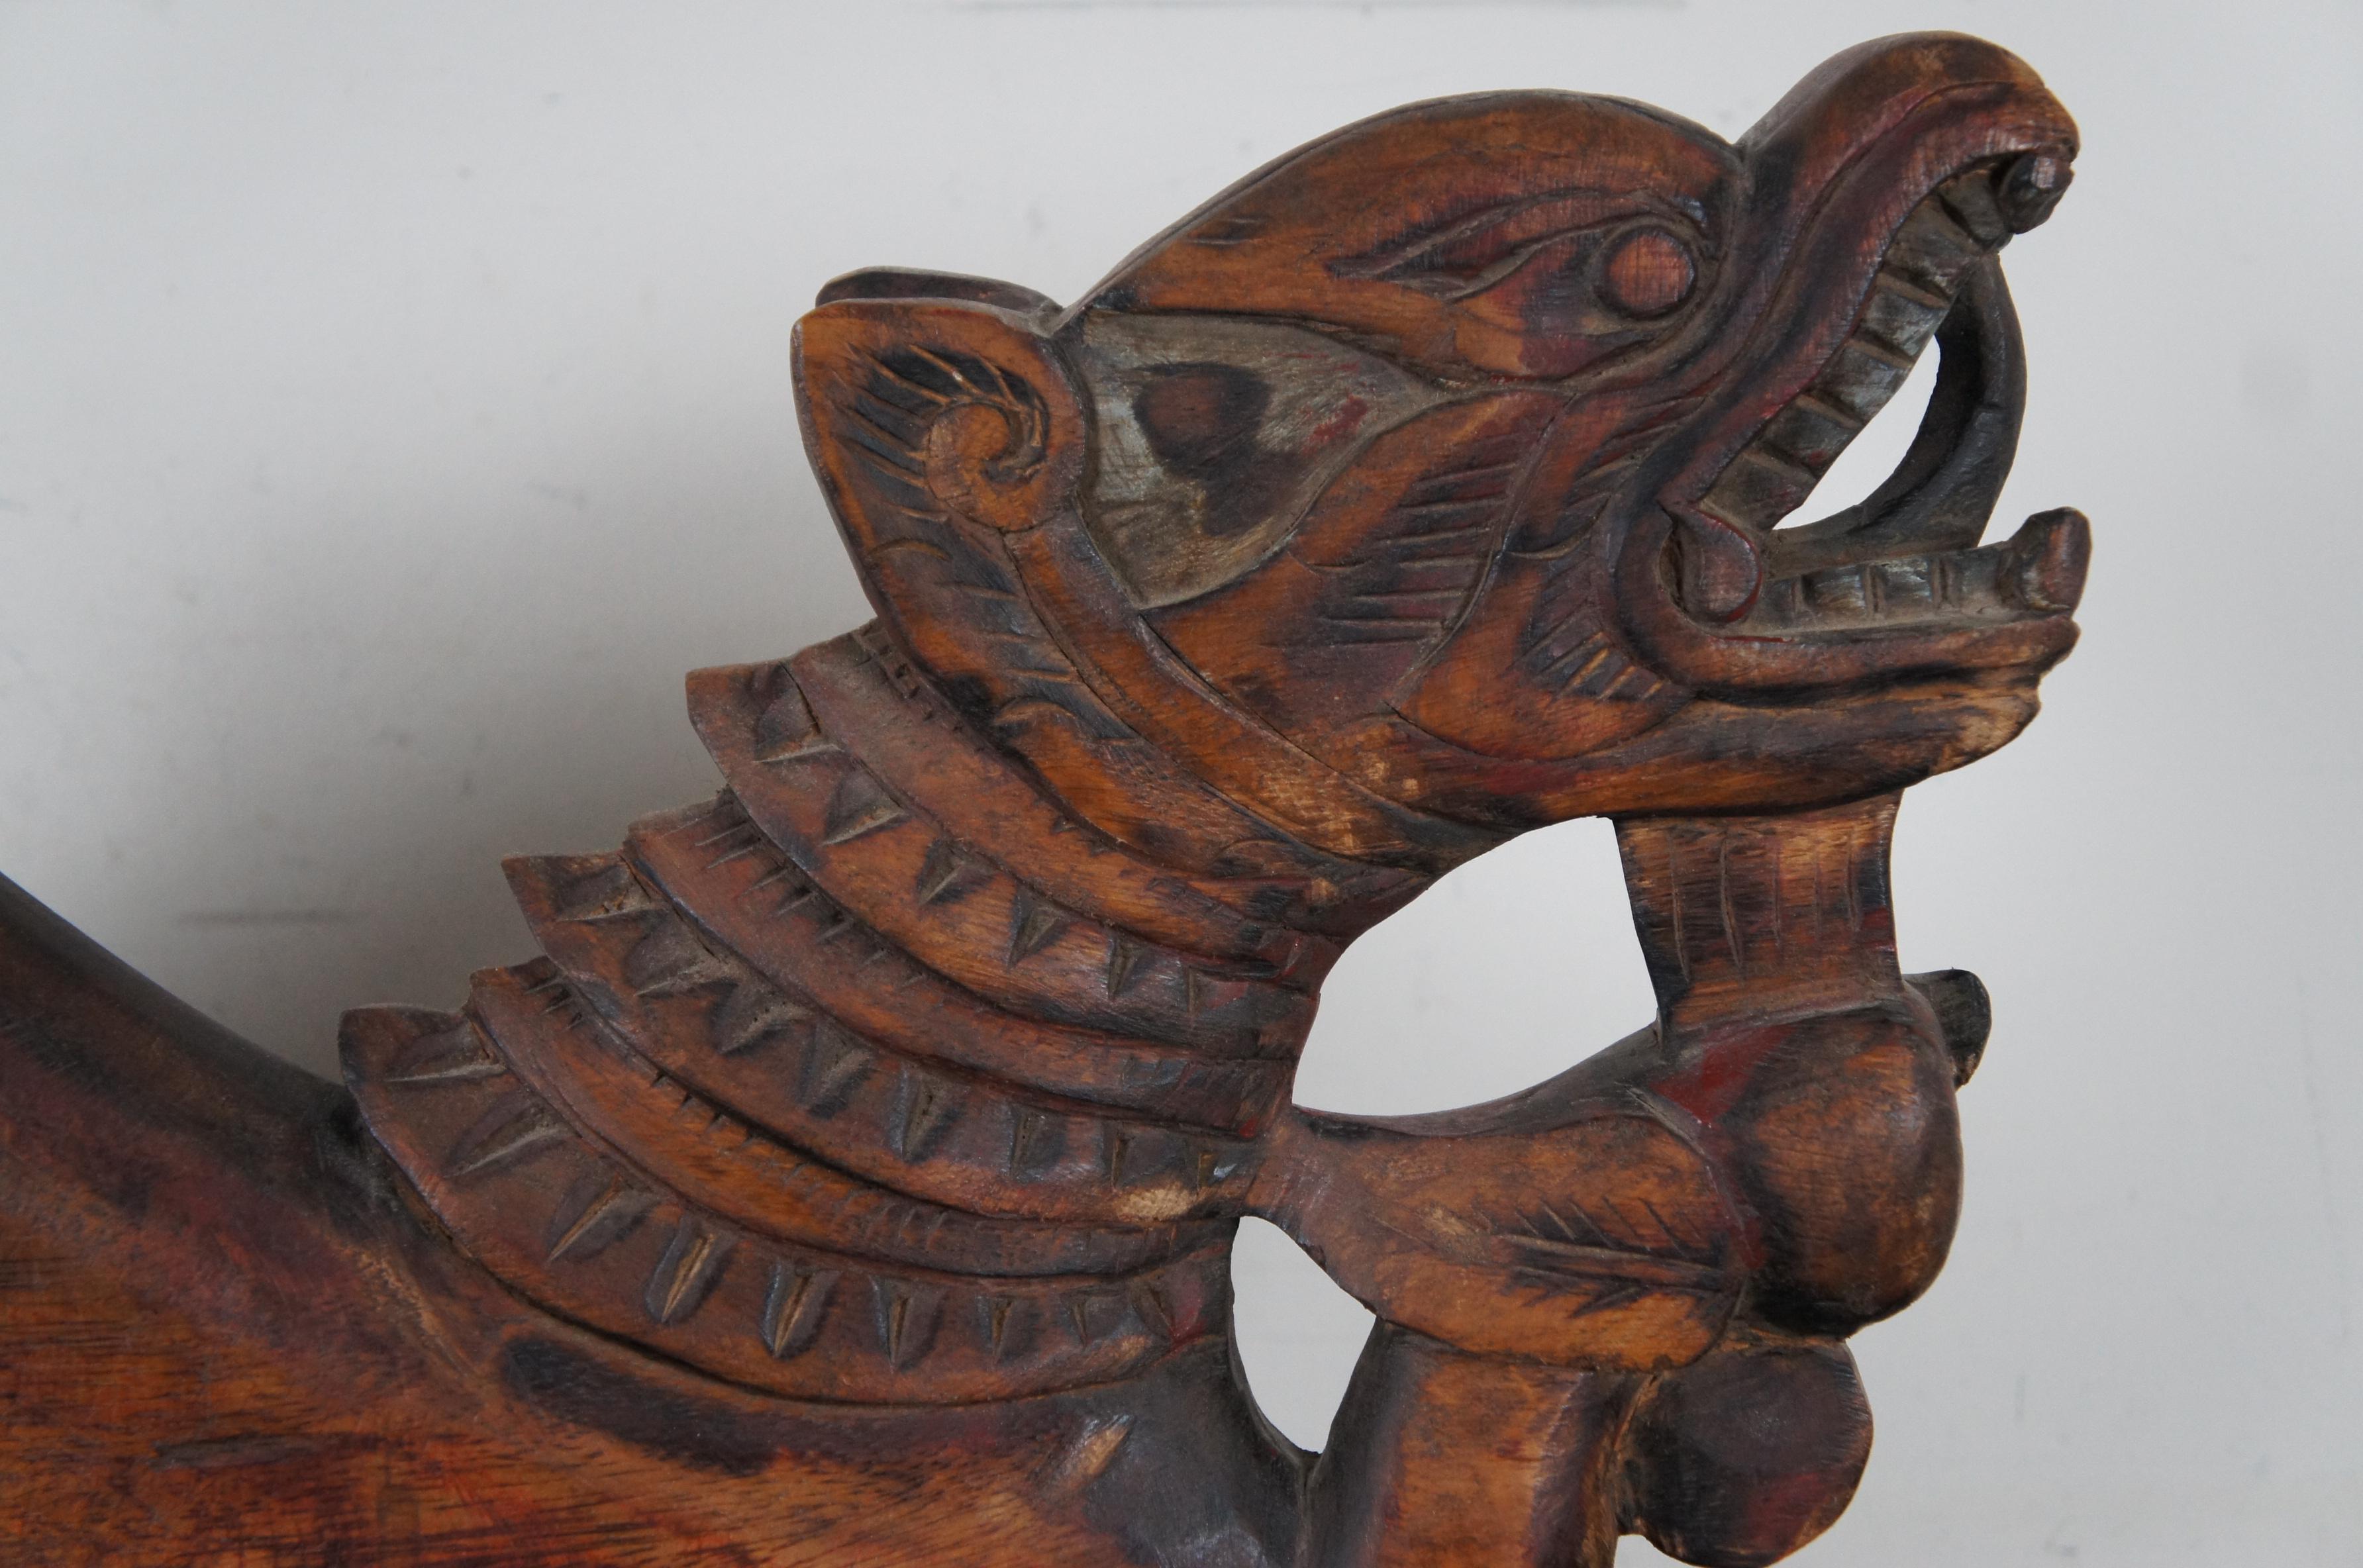 Pair of Dragon Serpent Corbels plinths decorative stone ornaments wall plaques 